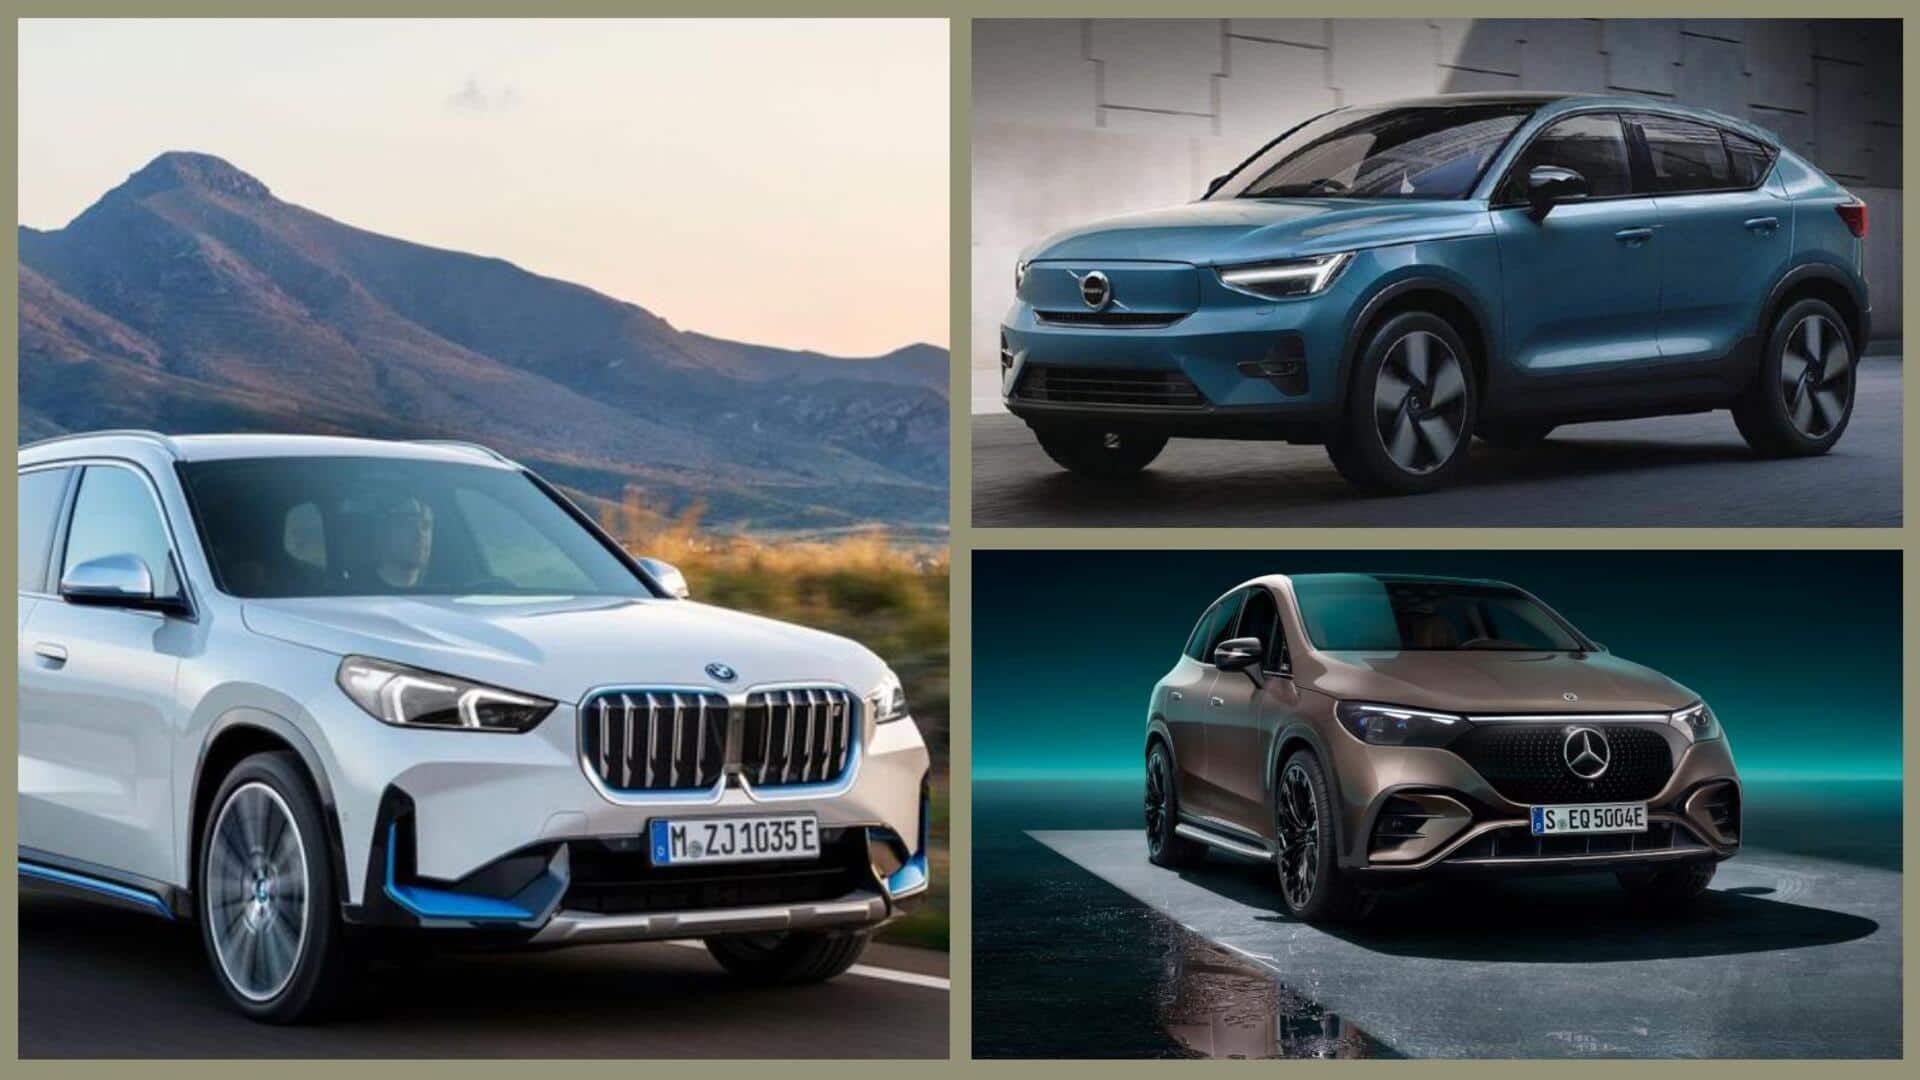 BMW iX1 है कंपनी की सबसे किफायती इलेक्ट्रिक कार, इन गाड़ियाें को देगी टक्कर